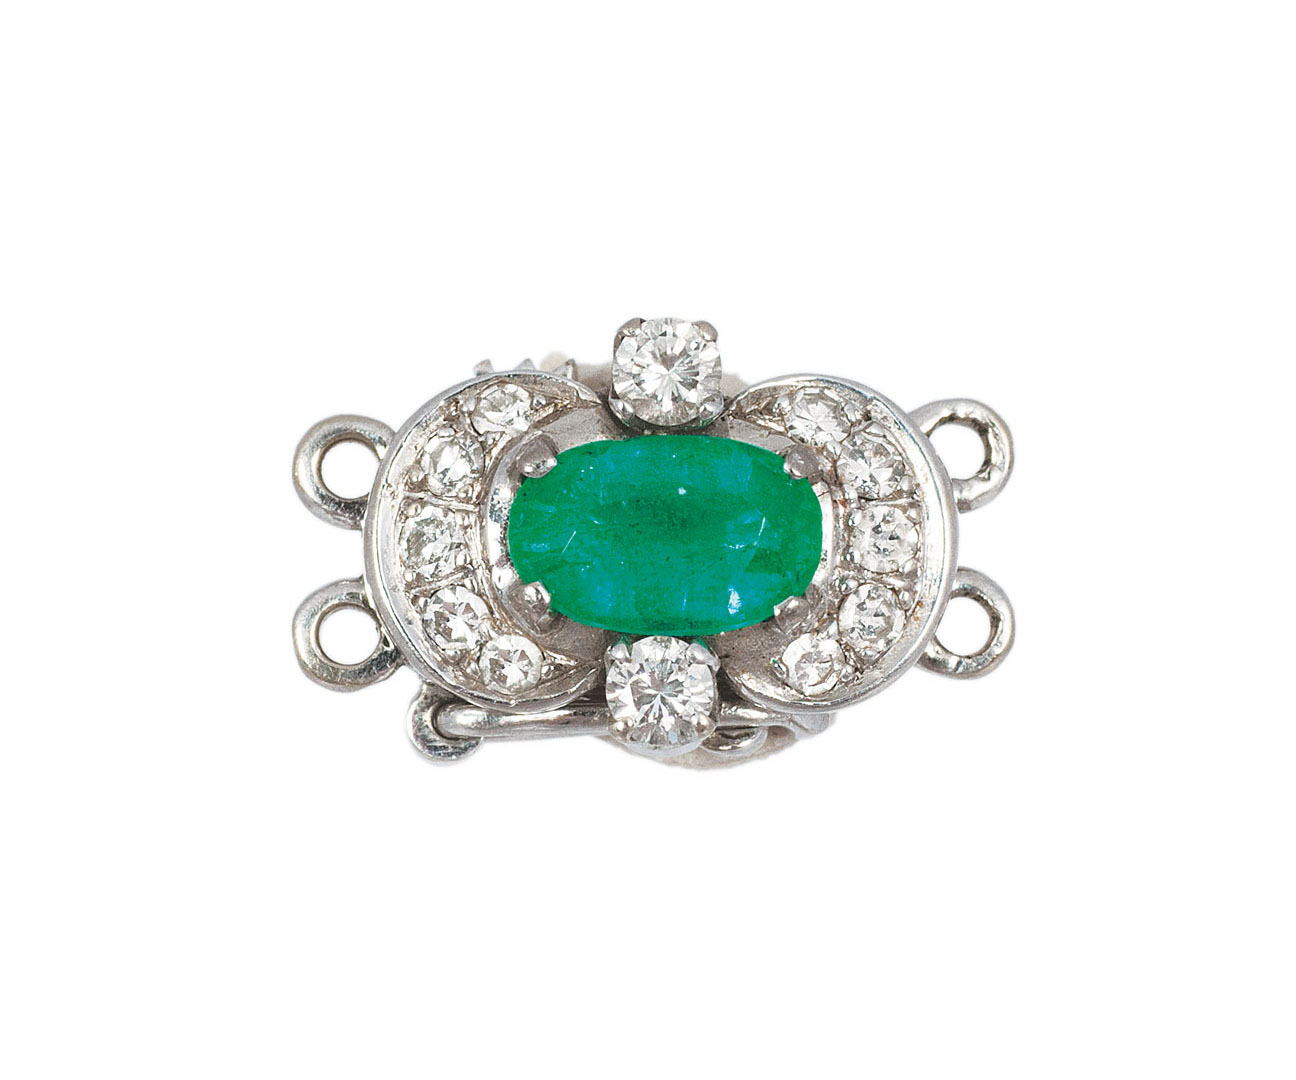 A small emerald diamond clasp